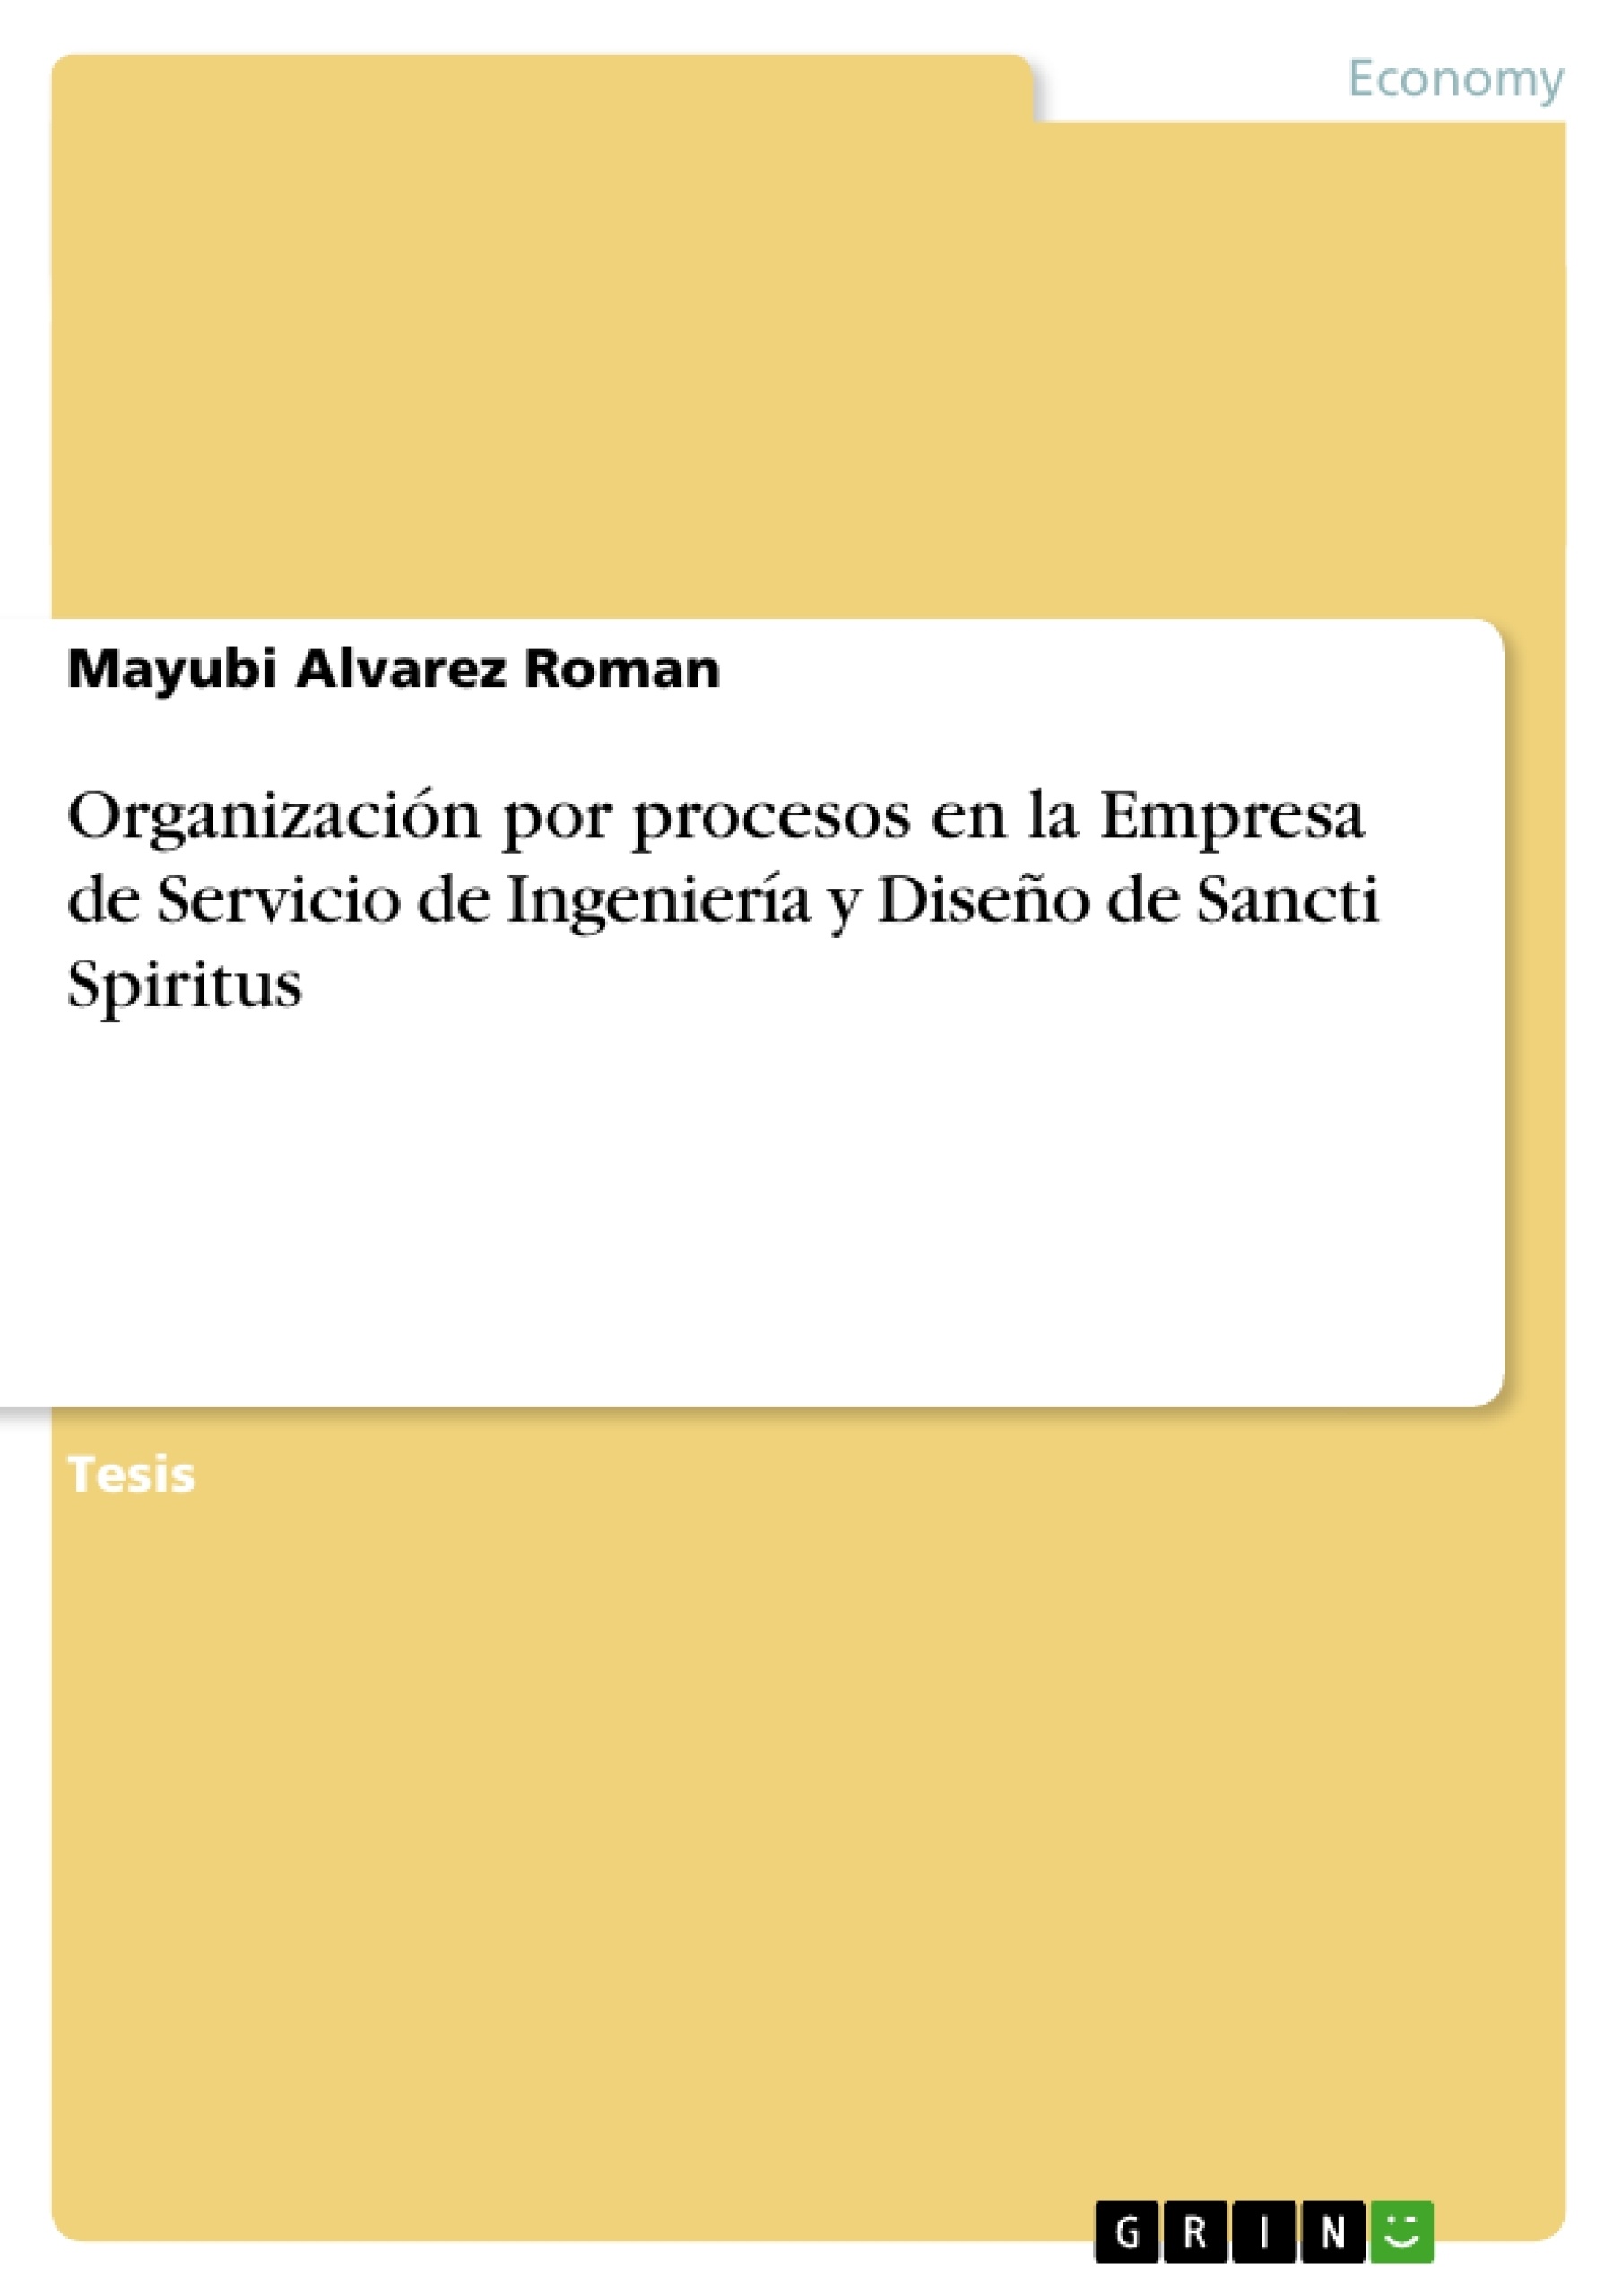 Título: Organización por procesos en la Empresa de Servicio de Ingeniería y Diseño de Sancti Spiritus